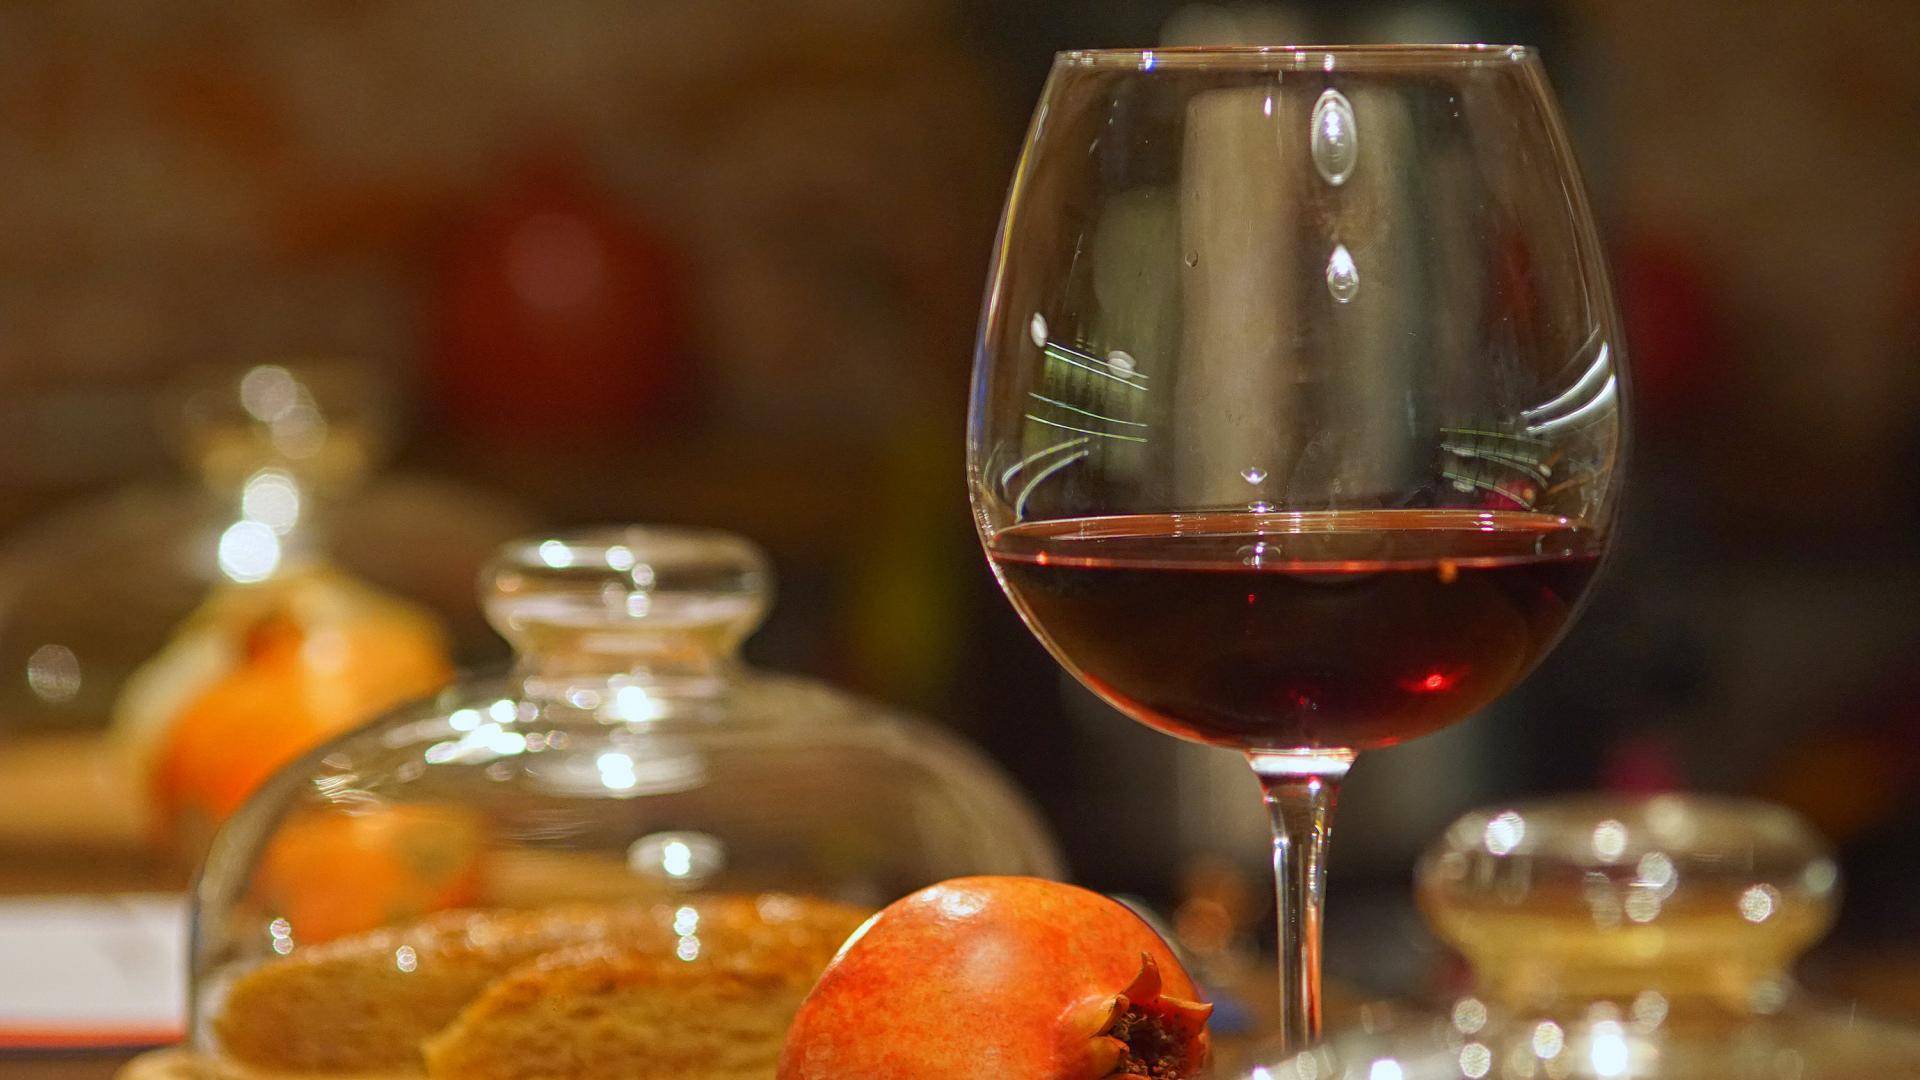 Драгоценное гранатовое вино из армении. как приготовить дома по рецепту? | про самогон и другие напитки ? | яндекс дзен